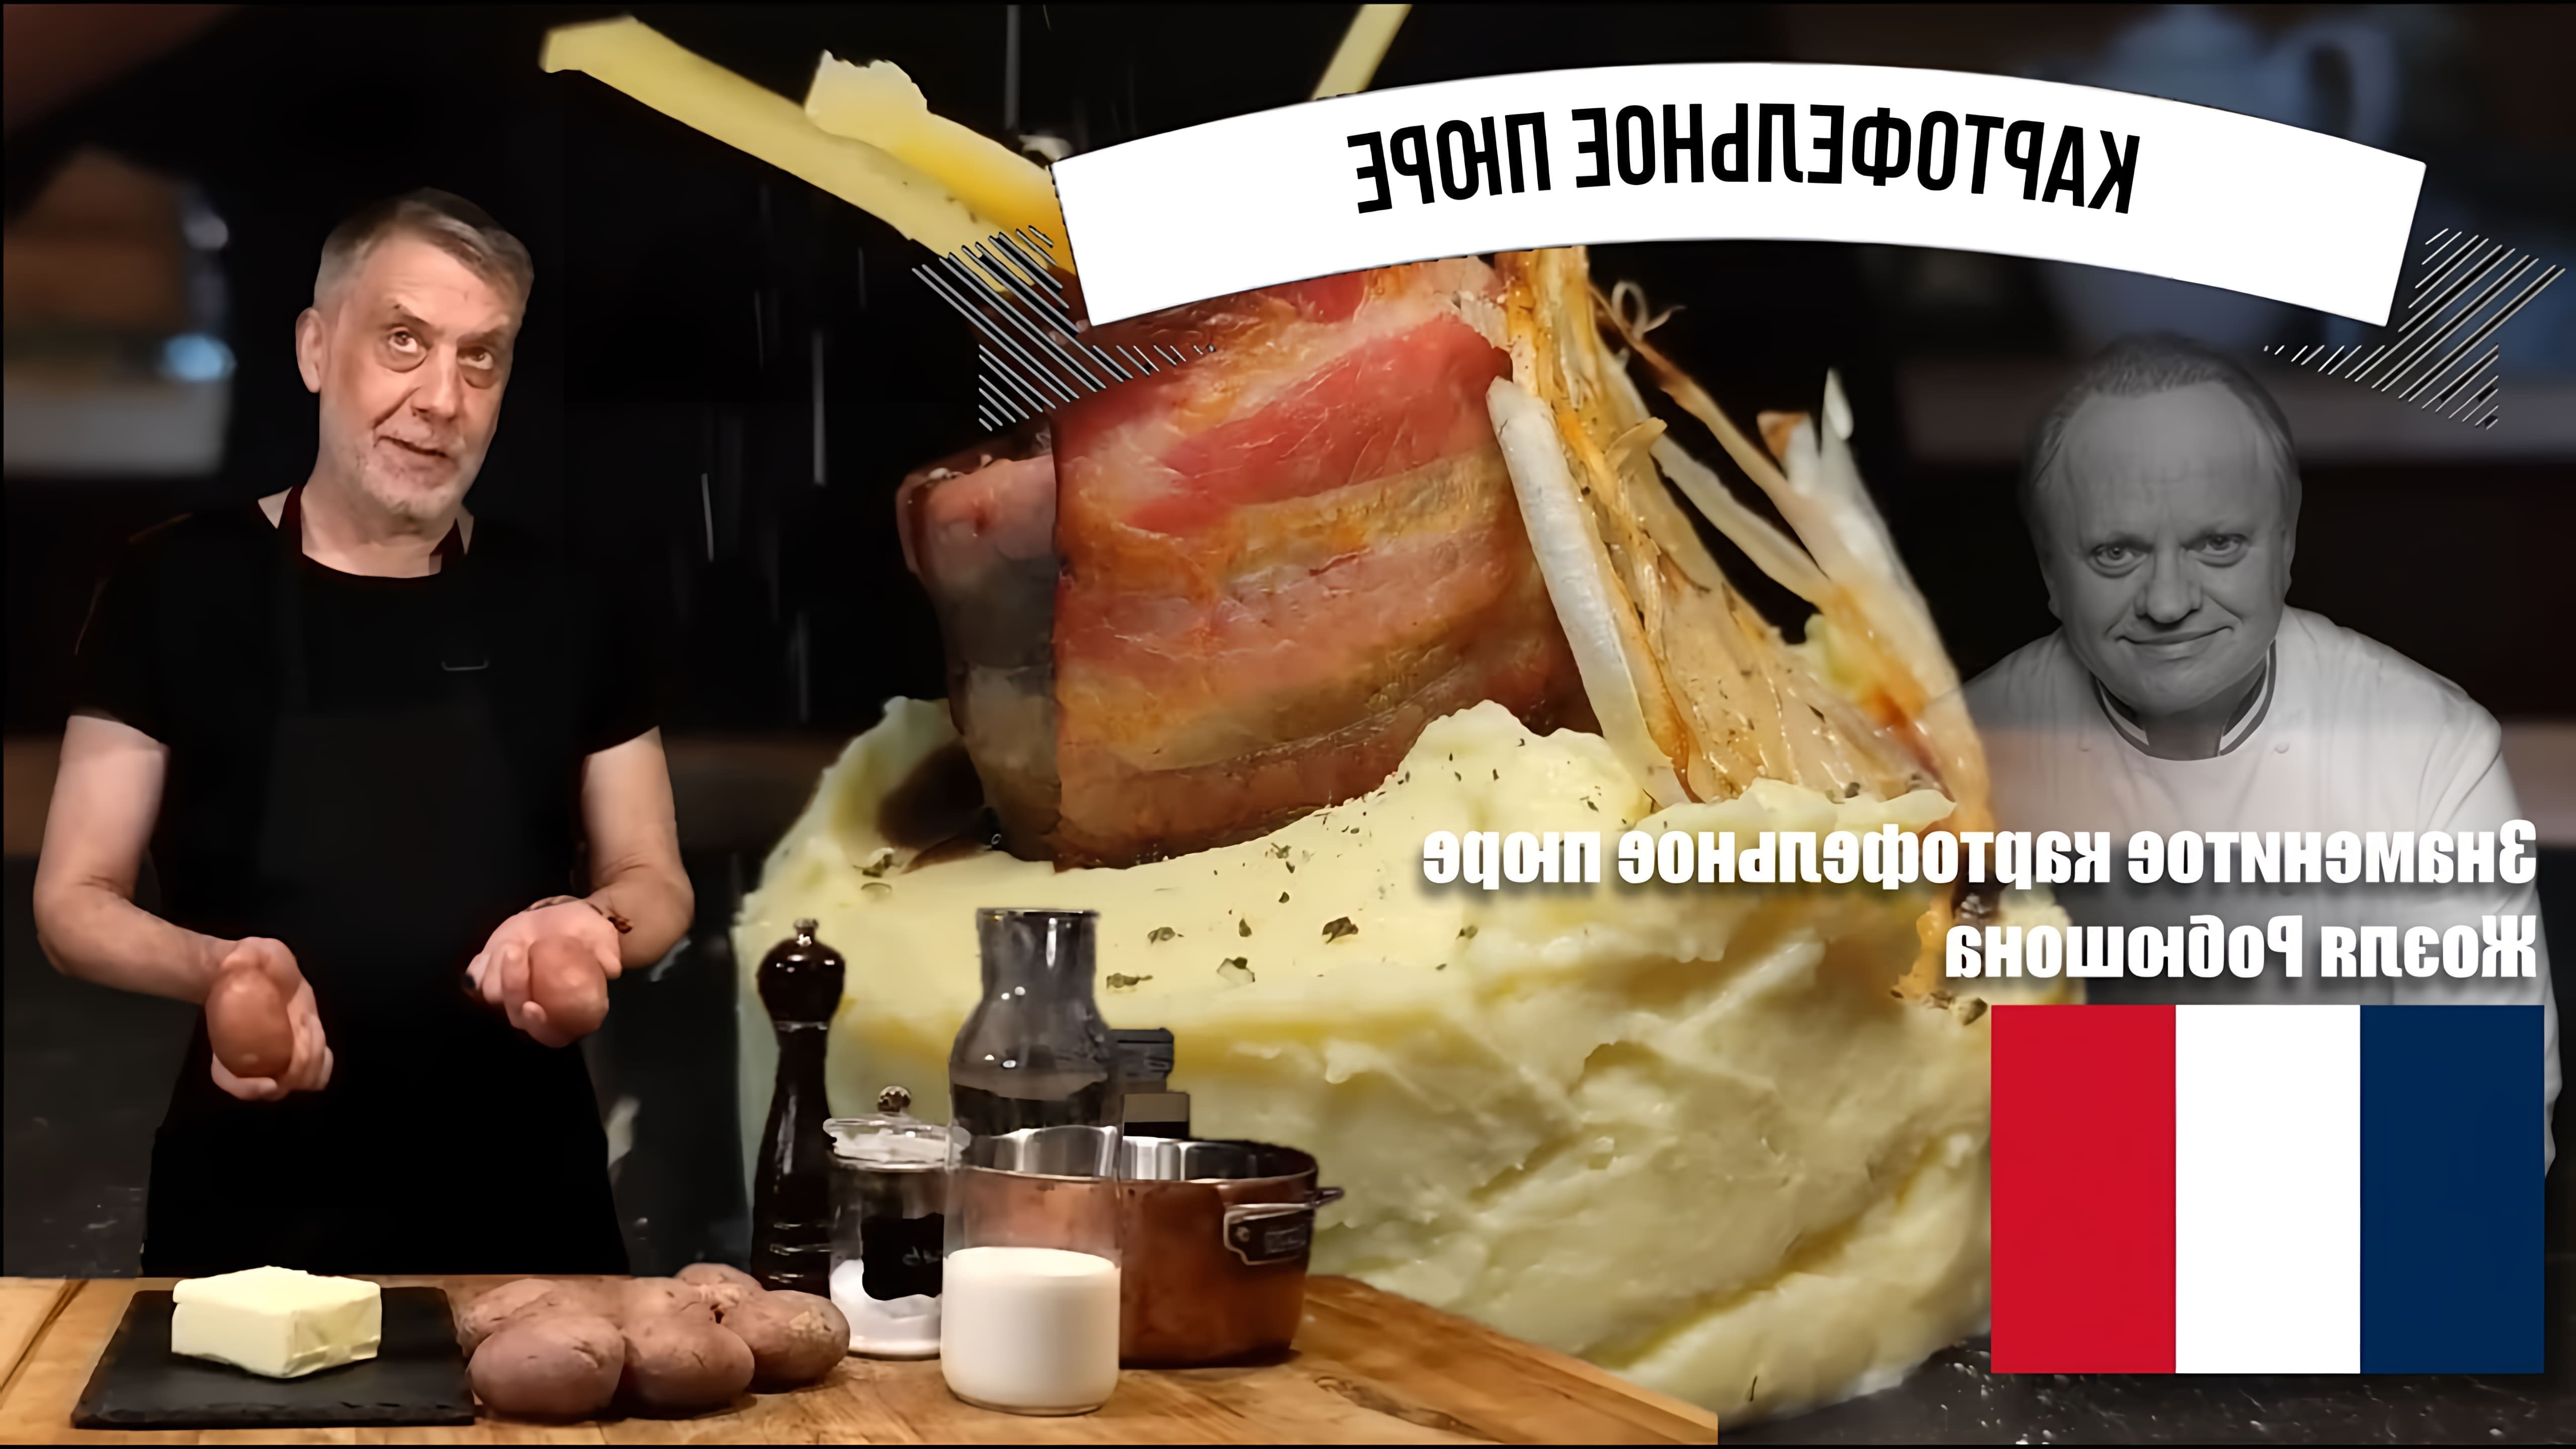 В этом видео Жоэль Робюшон, знаменитый французский шеф-повар, рассказывает о своем рецепте картофельного пюре